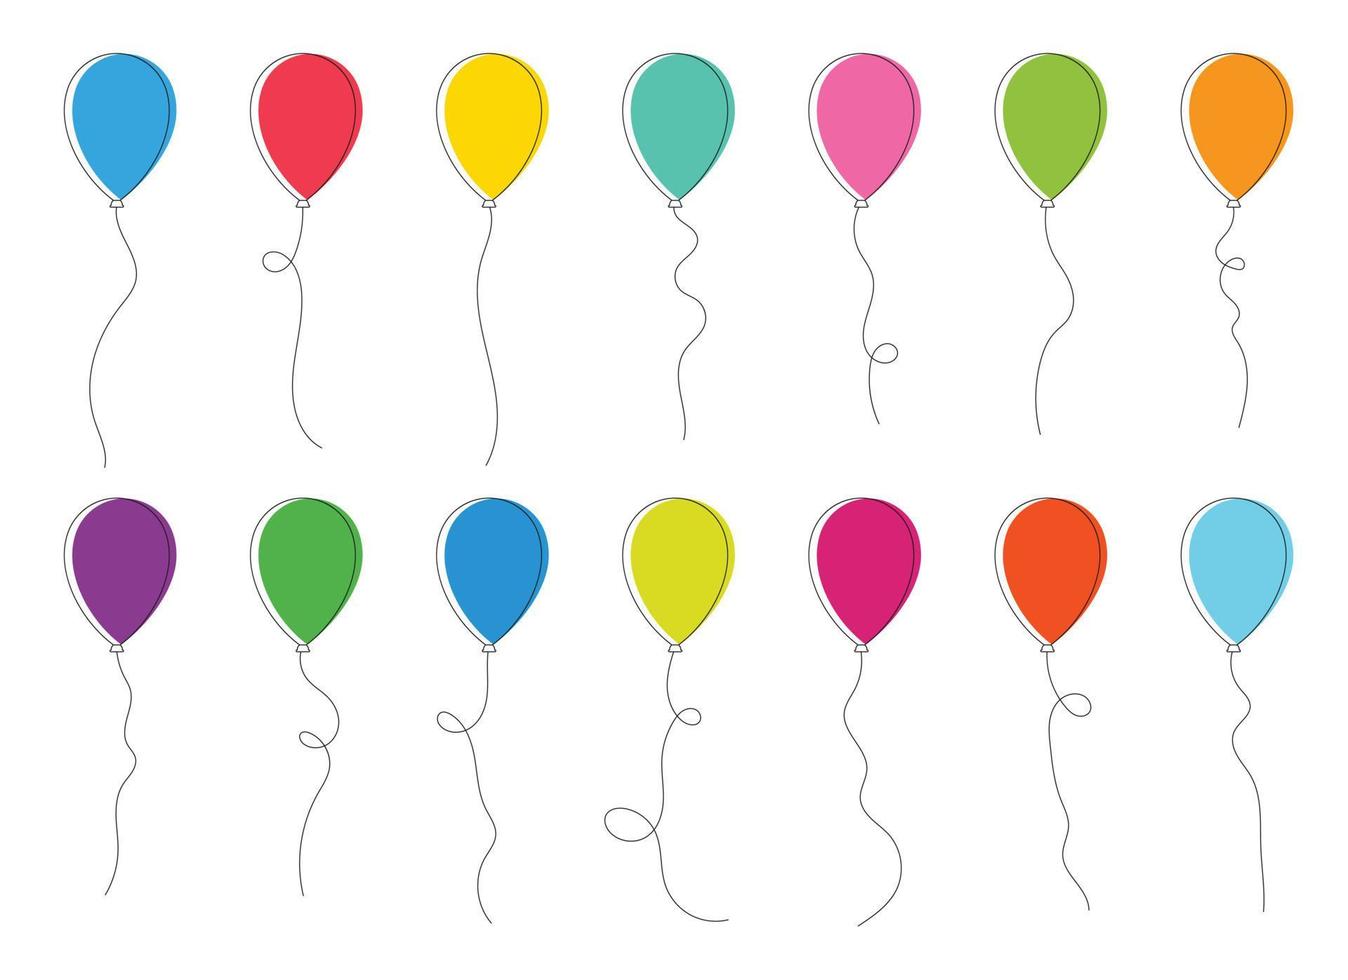 impostato di colorato festa palloncini legato con stringhe. vettore illustrazione nel cartone animato stile